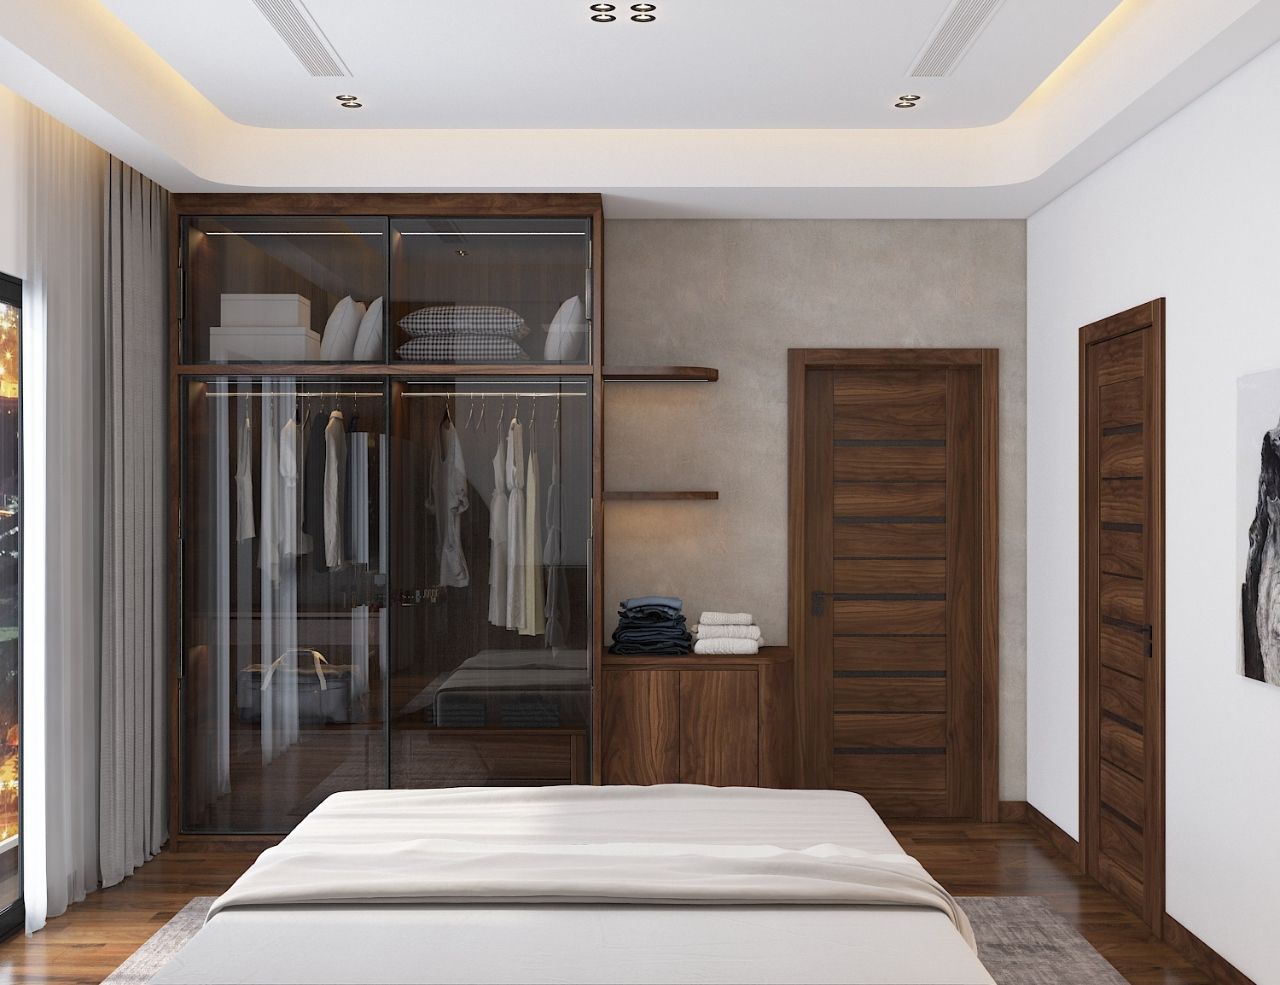 Tủ quần áo và cửa ra vào gỗ tự nhiên thiết kế đơn giản